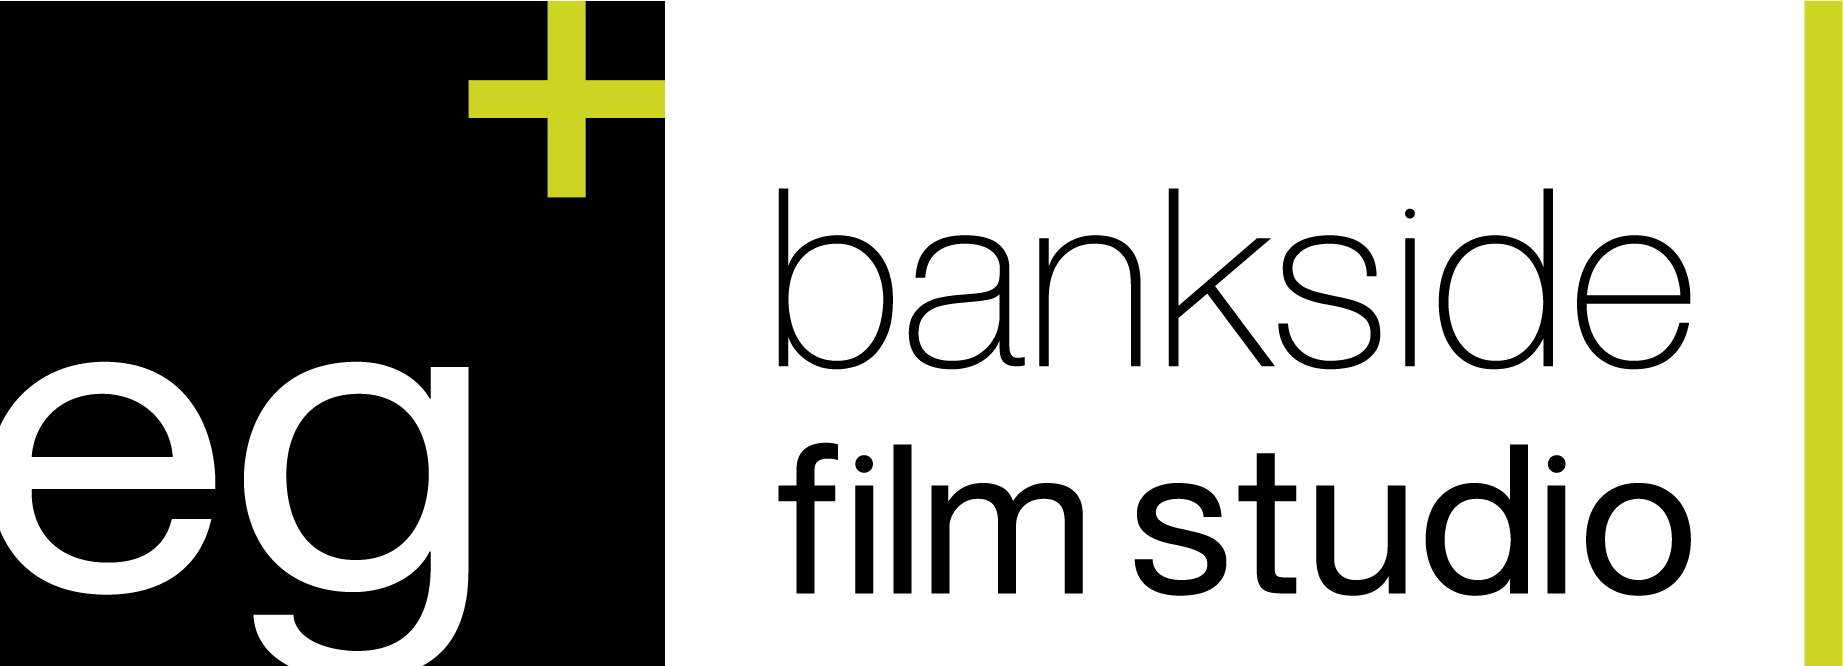 eg+ Bankside Film Studio